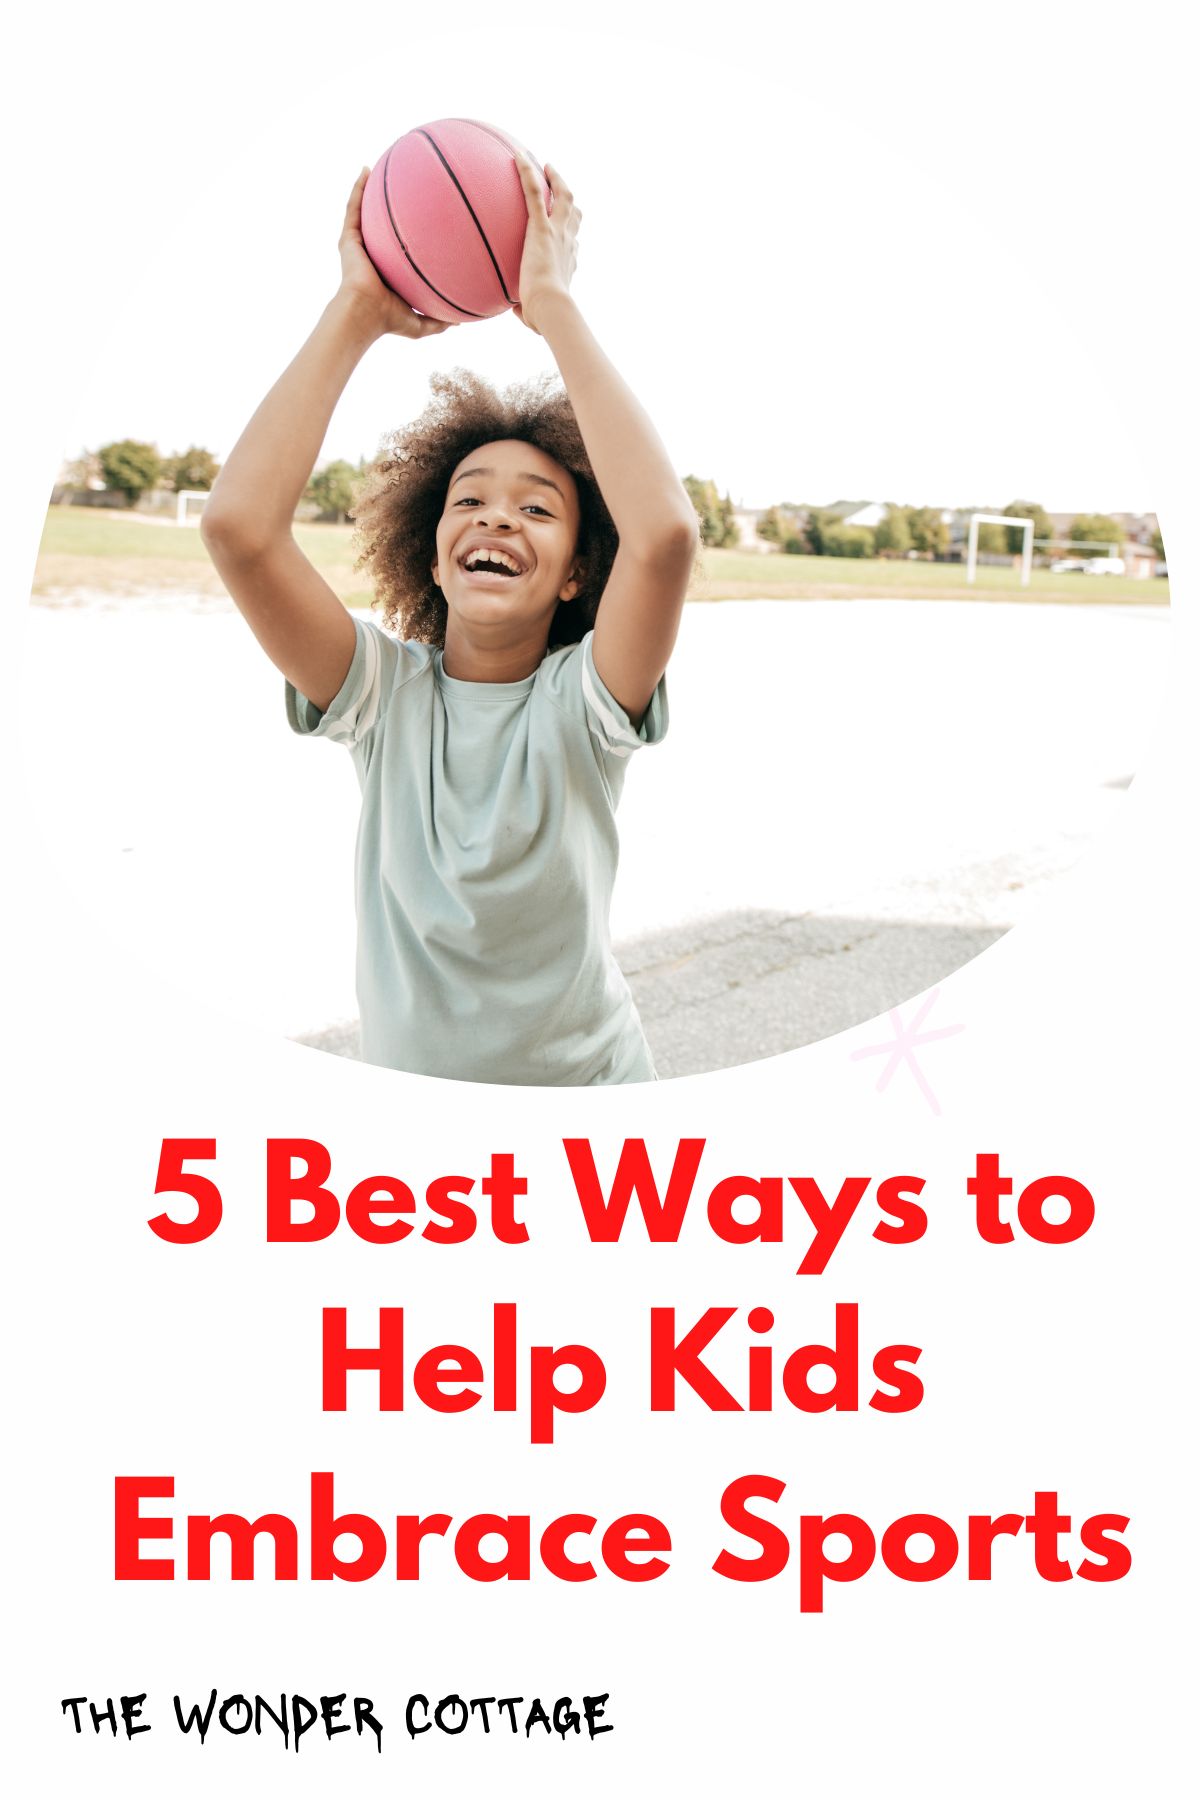 5 Best Ways to Help Kids Embrace Sports